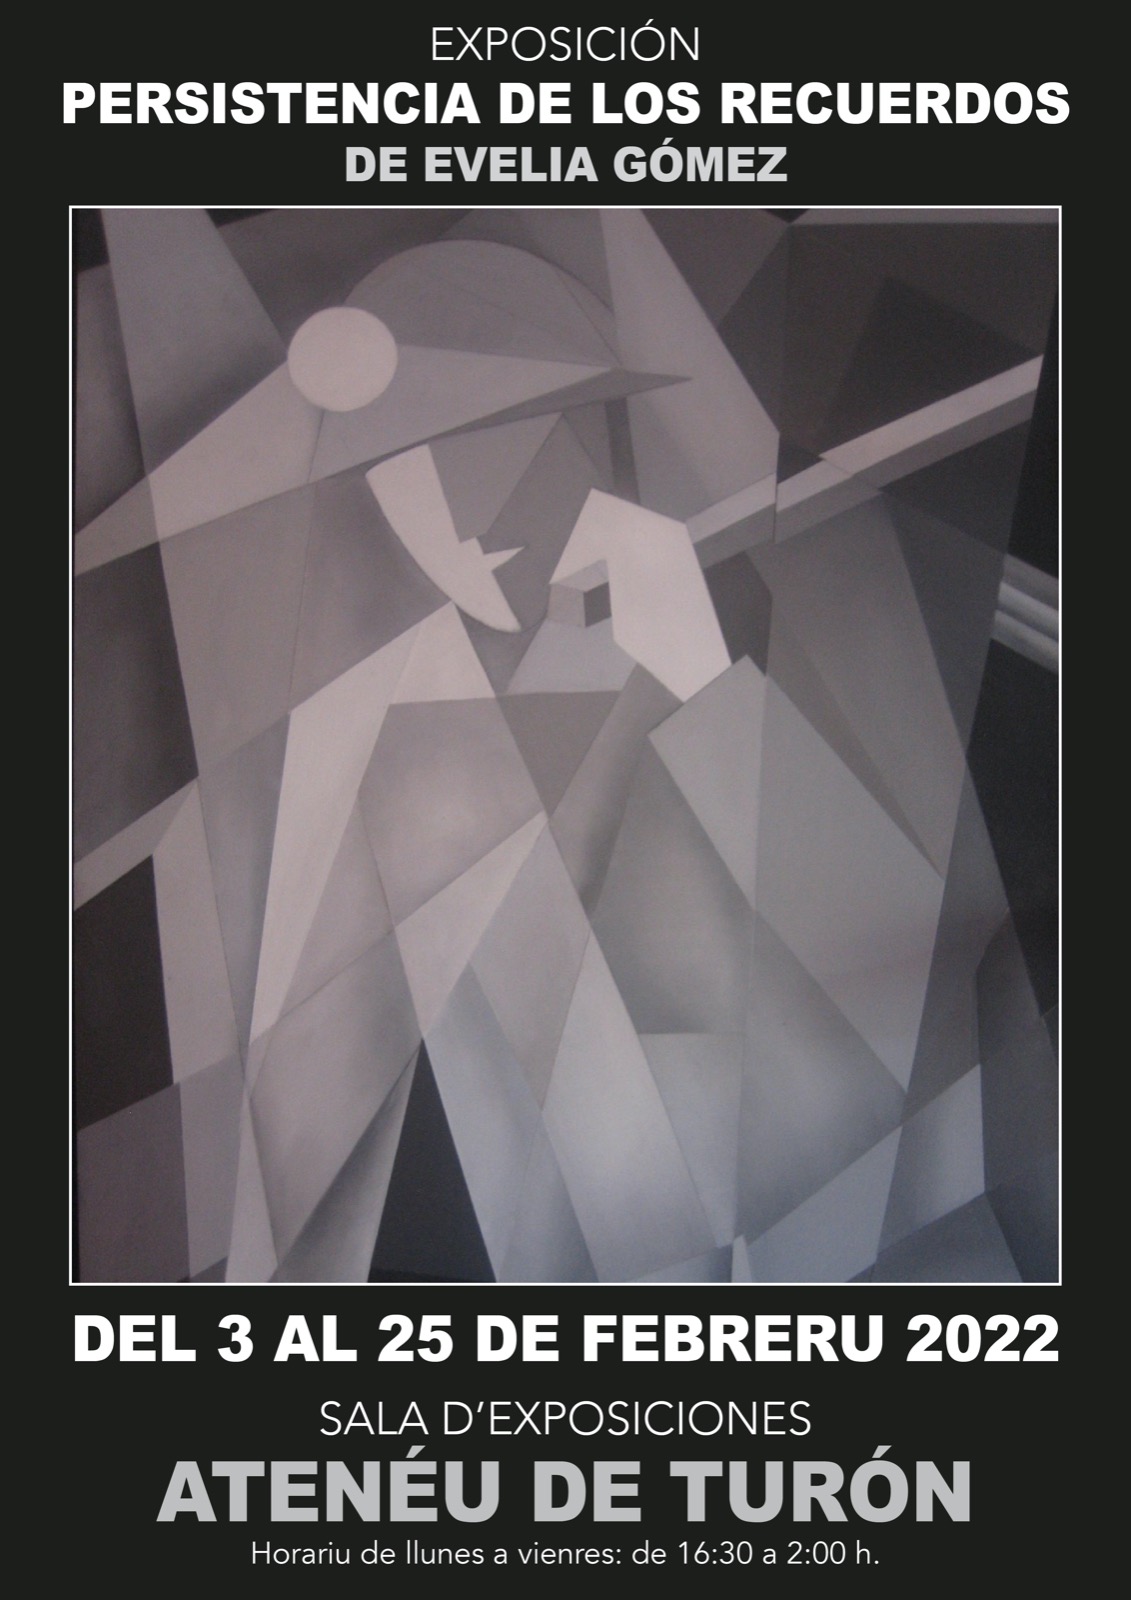 Exposicion Persistencia De Los Recuerdos Evelia Gomez 2022